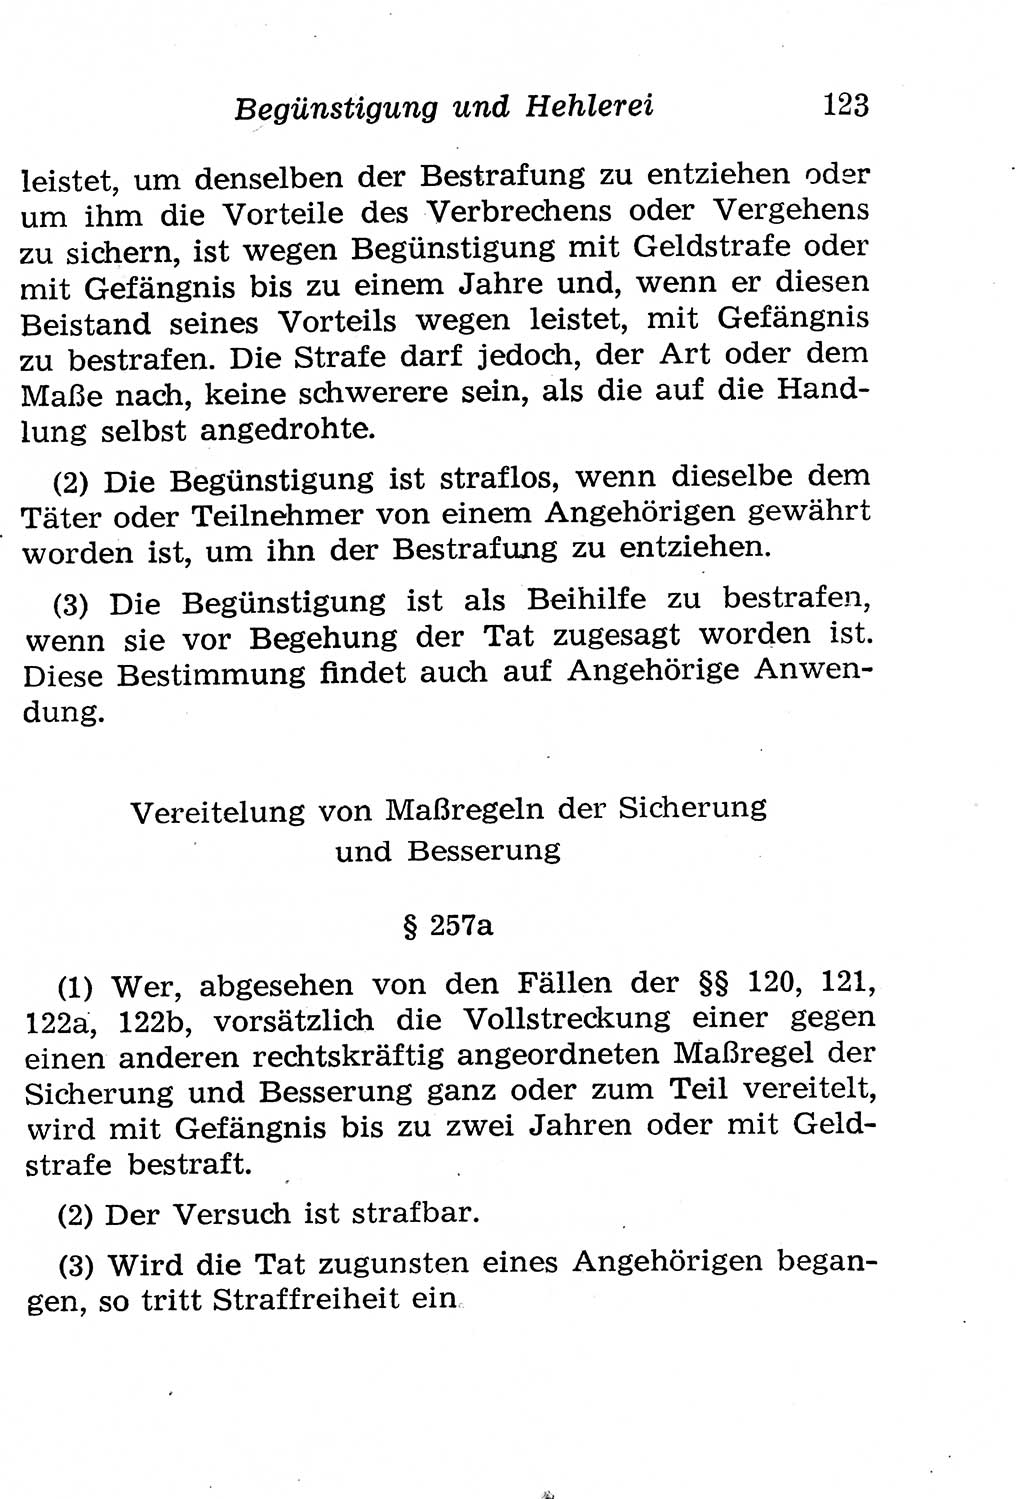 Strafgesetzbuch (StGB) und andere Strafgesetze [Deutsche Demokratische Republik (DDR)] 1958, Seite 123 (StGB Strafges. DDR 1958, S. 123)